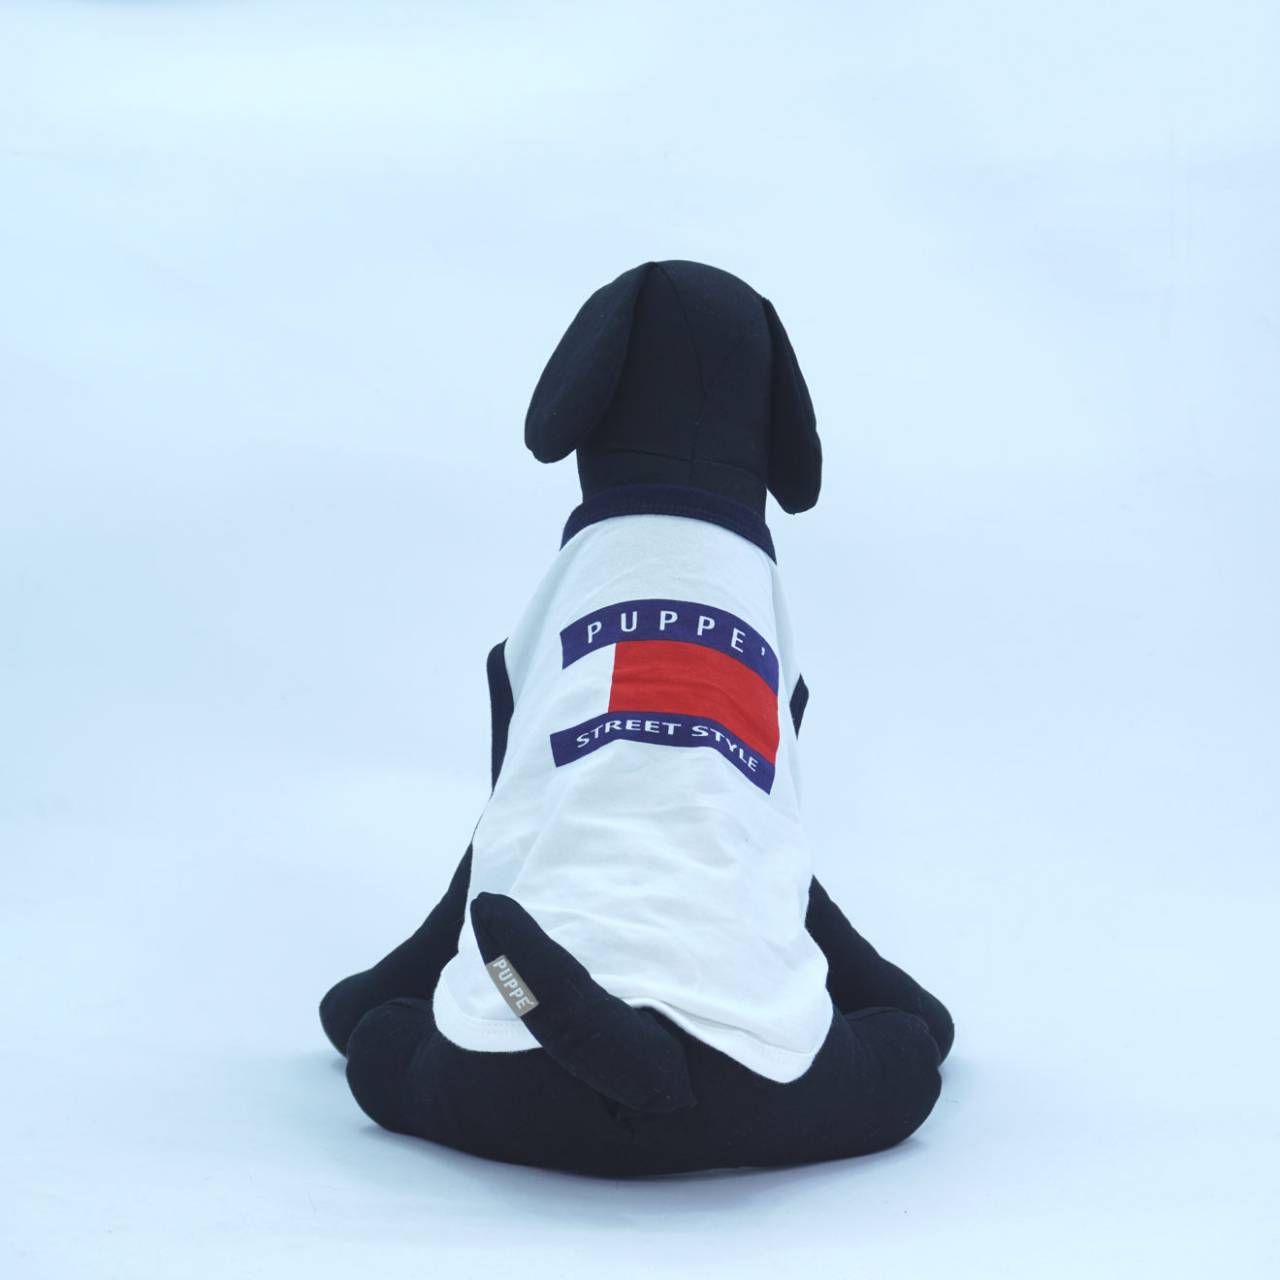 Puppe’ เสื้อยืดแขนกุด PAE156 สำหรับสุนัขและแมว สีขาว